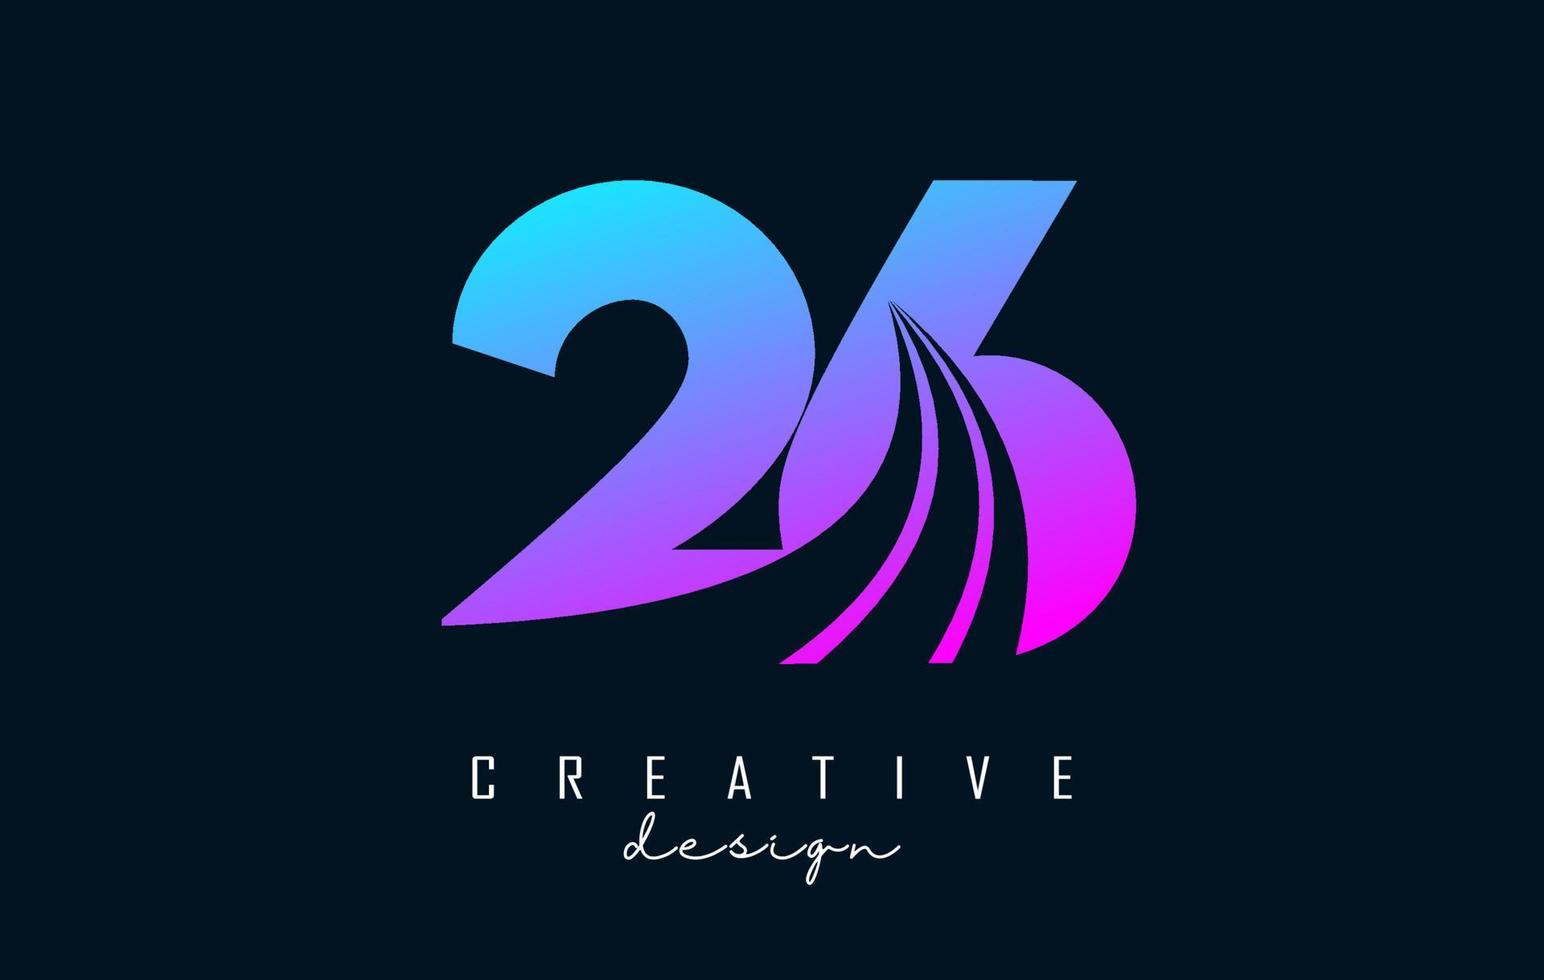 logo créatif coloré numéro 26 2 6 avec lignes directrices et conception de concept de route. nombre avec un dessin géométrique. vecteur